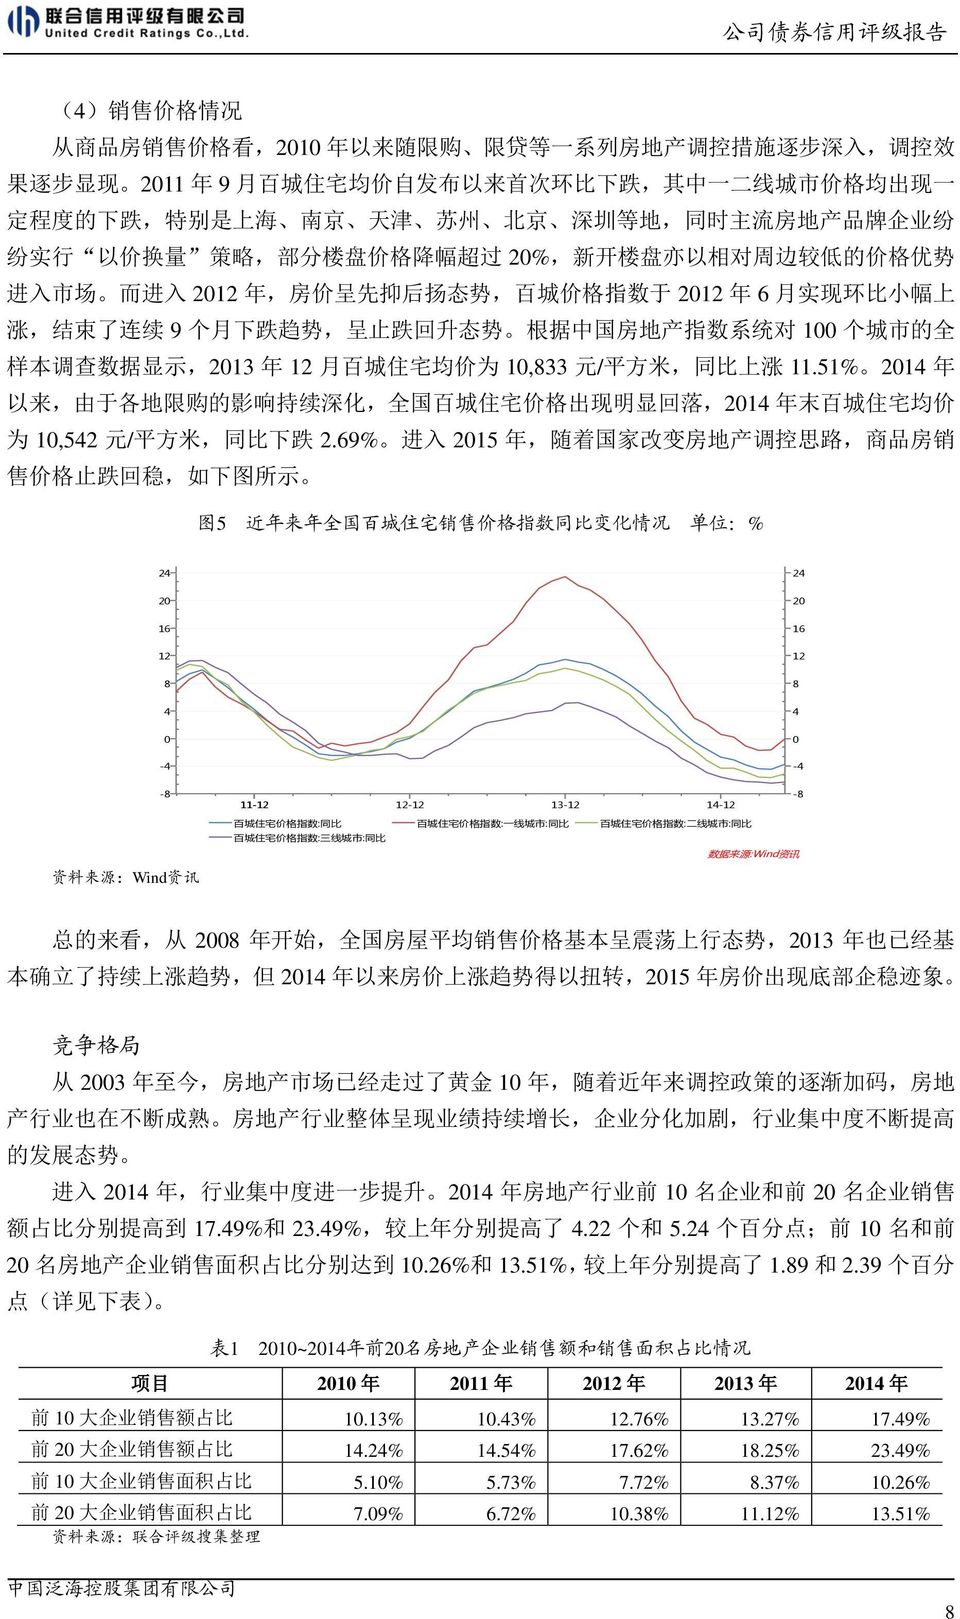 小 幅 上 涨, 结 束 了 连 续 9 个 月 下 跌 趋 势, 呈 止 跌 回 升 态 势 根 据 中 国 房 地 产 指 数 系 统 对 100 个 城 市 的 全 样 本 调 查 数 据 显 示,2013 年 12 月 百 城 住 宅 均 价 为 10,833 元 / 平 方 米, 同 比 上 涨 11.